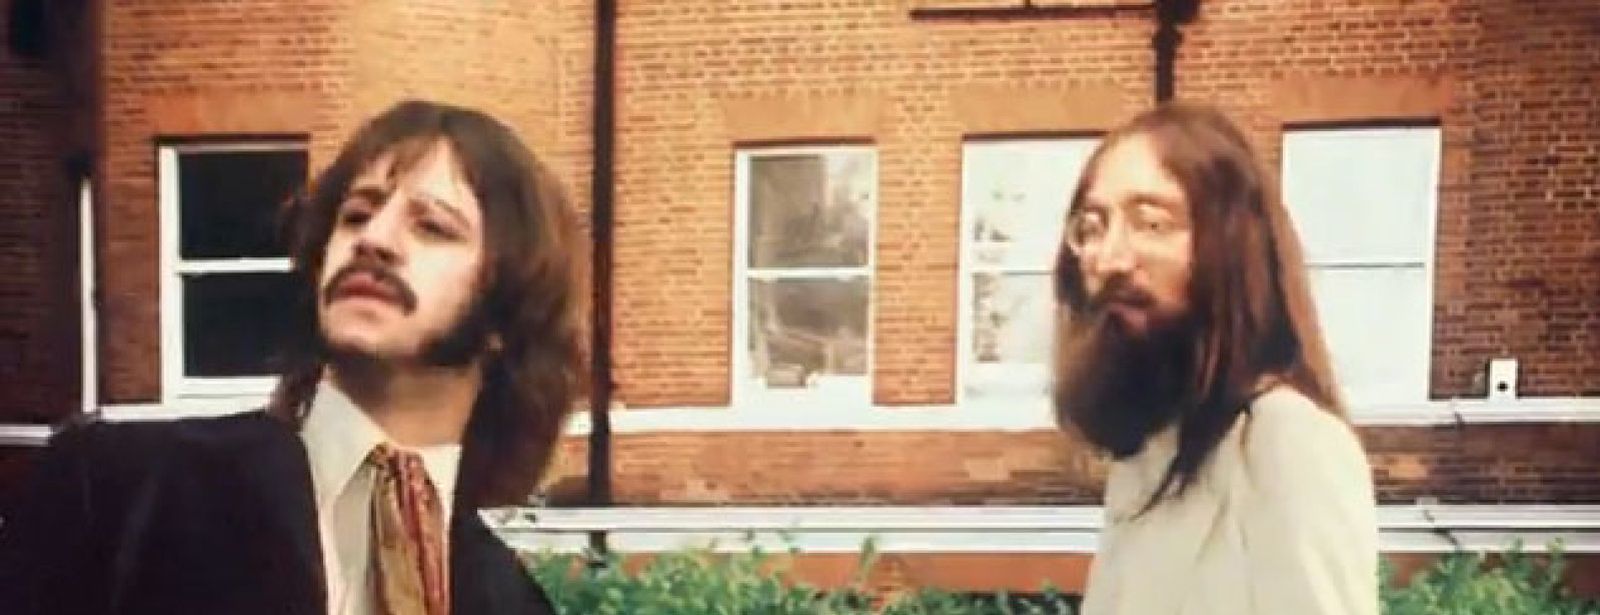 Foto: Lennon y Harrison "resucitan" en un anuncio del videojuego de los Beatles